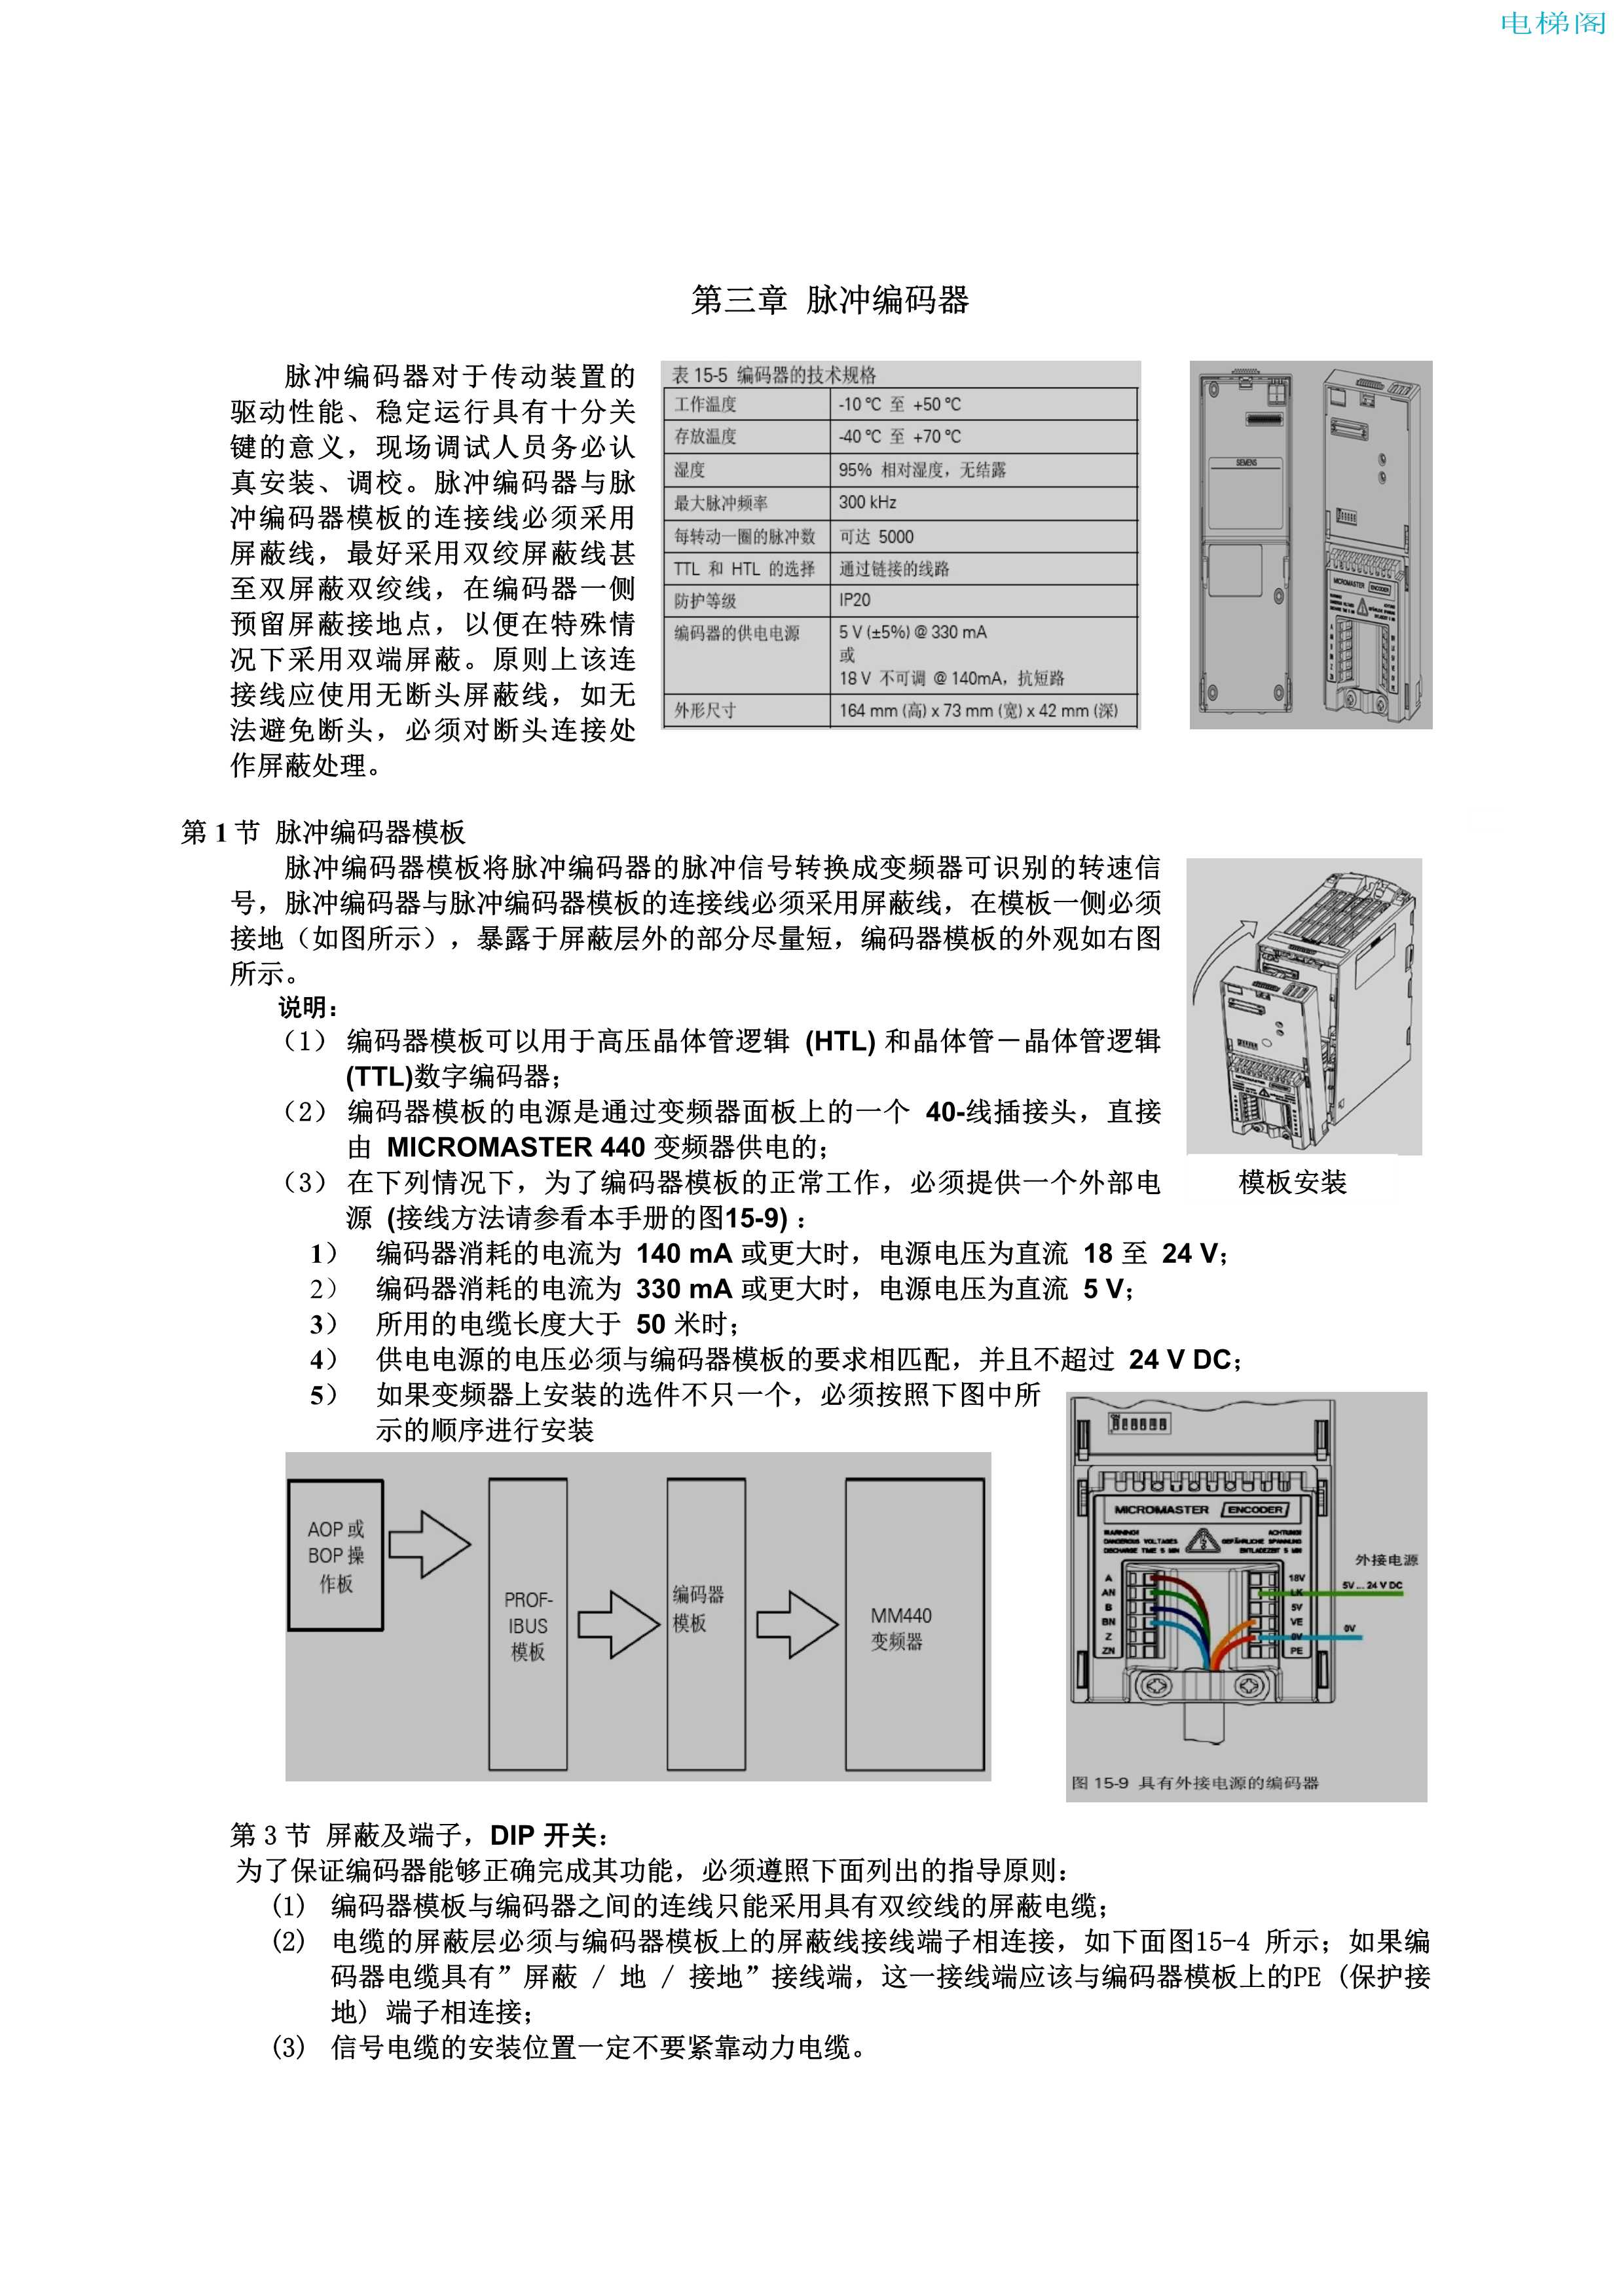 西门子MM440变频器电梯调试指导